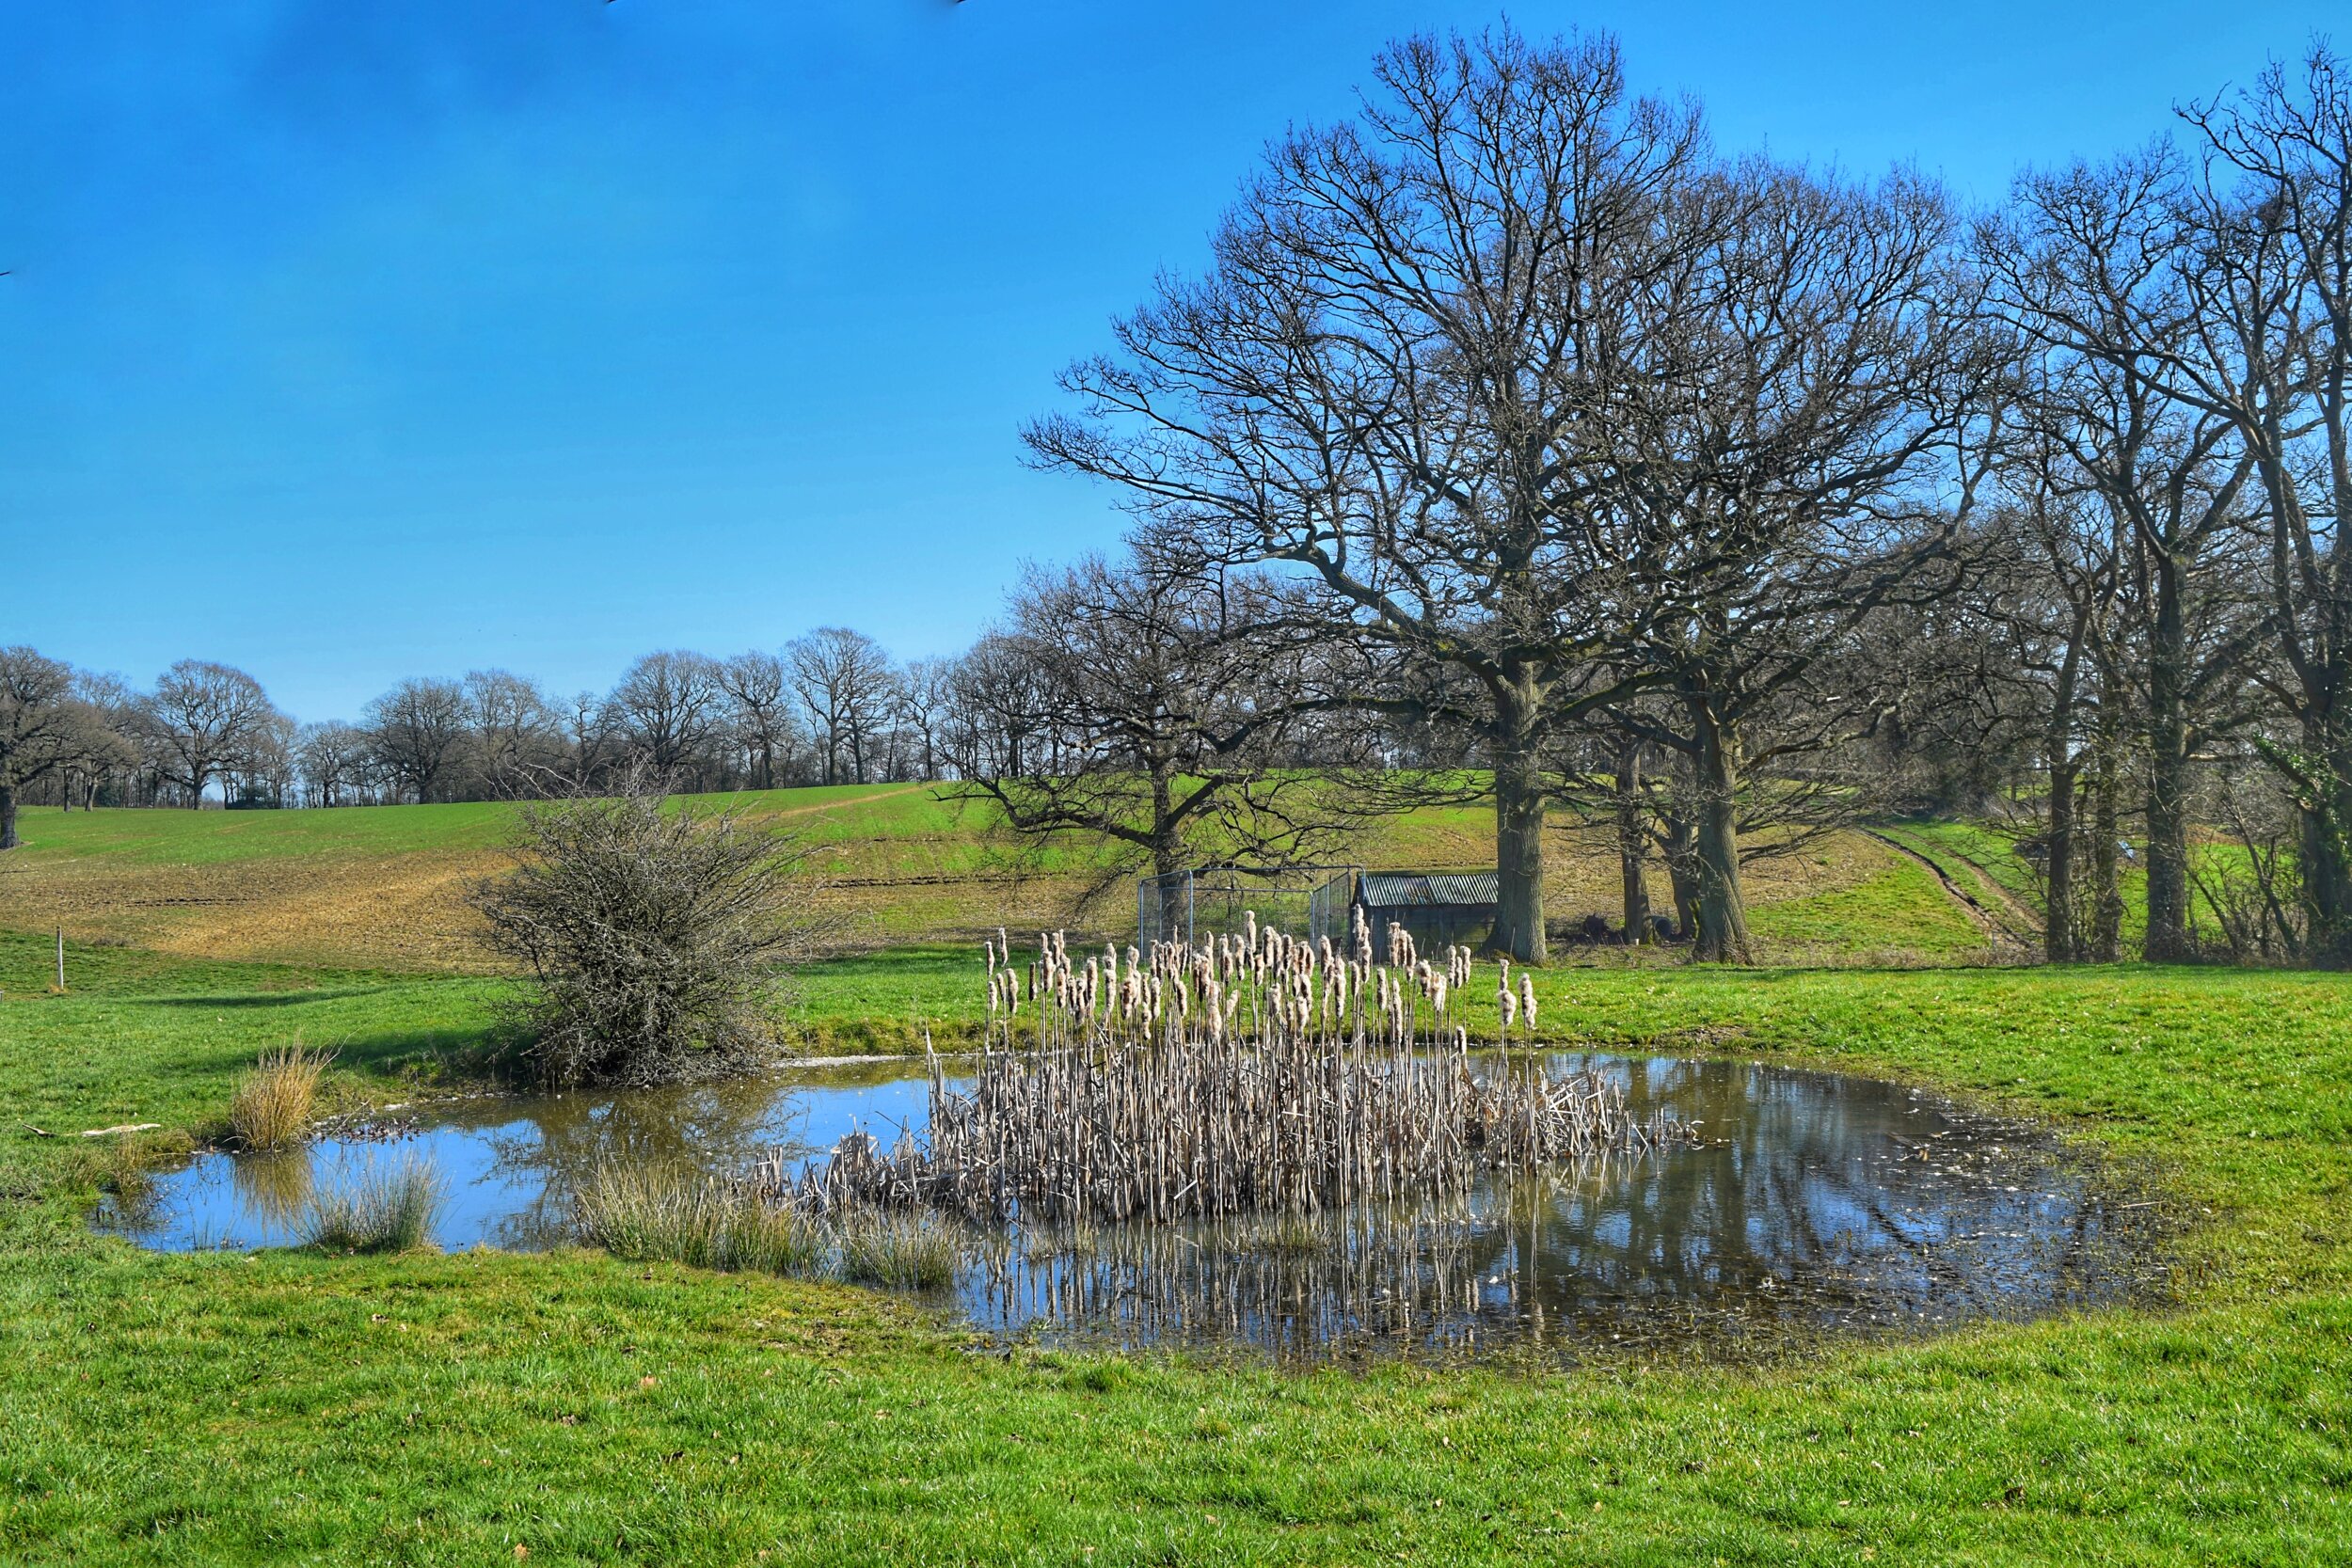 Walk Tonbridge - The Far Side of The Weald - Sevenoaks walks - Little Hale Farm - pond - blue sky.jpeg